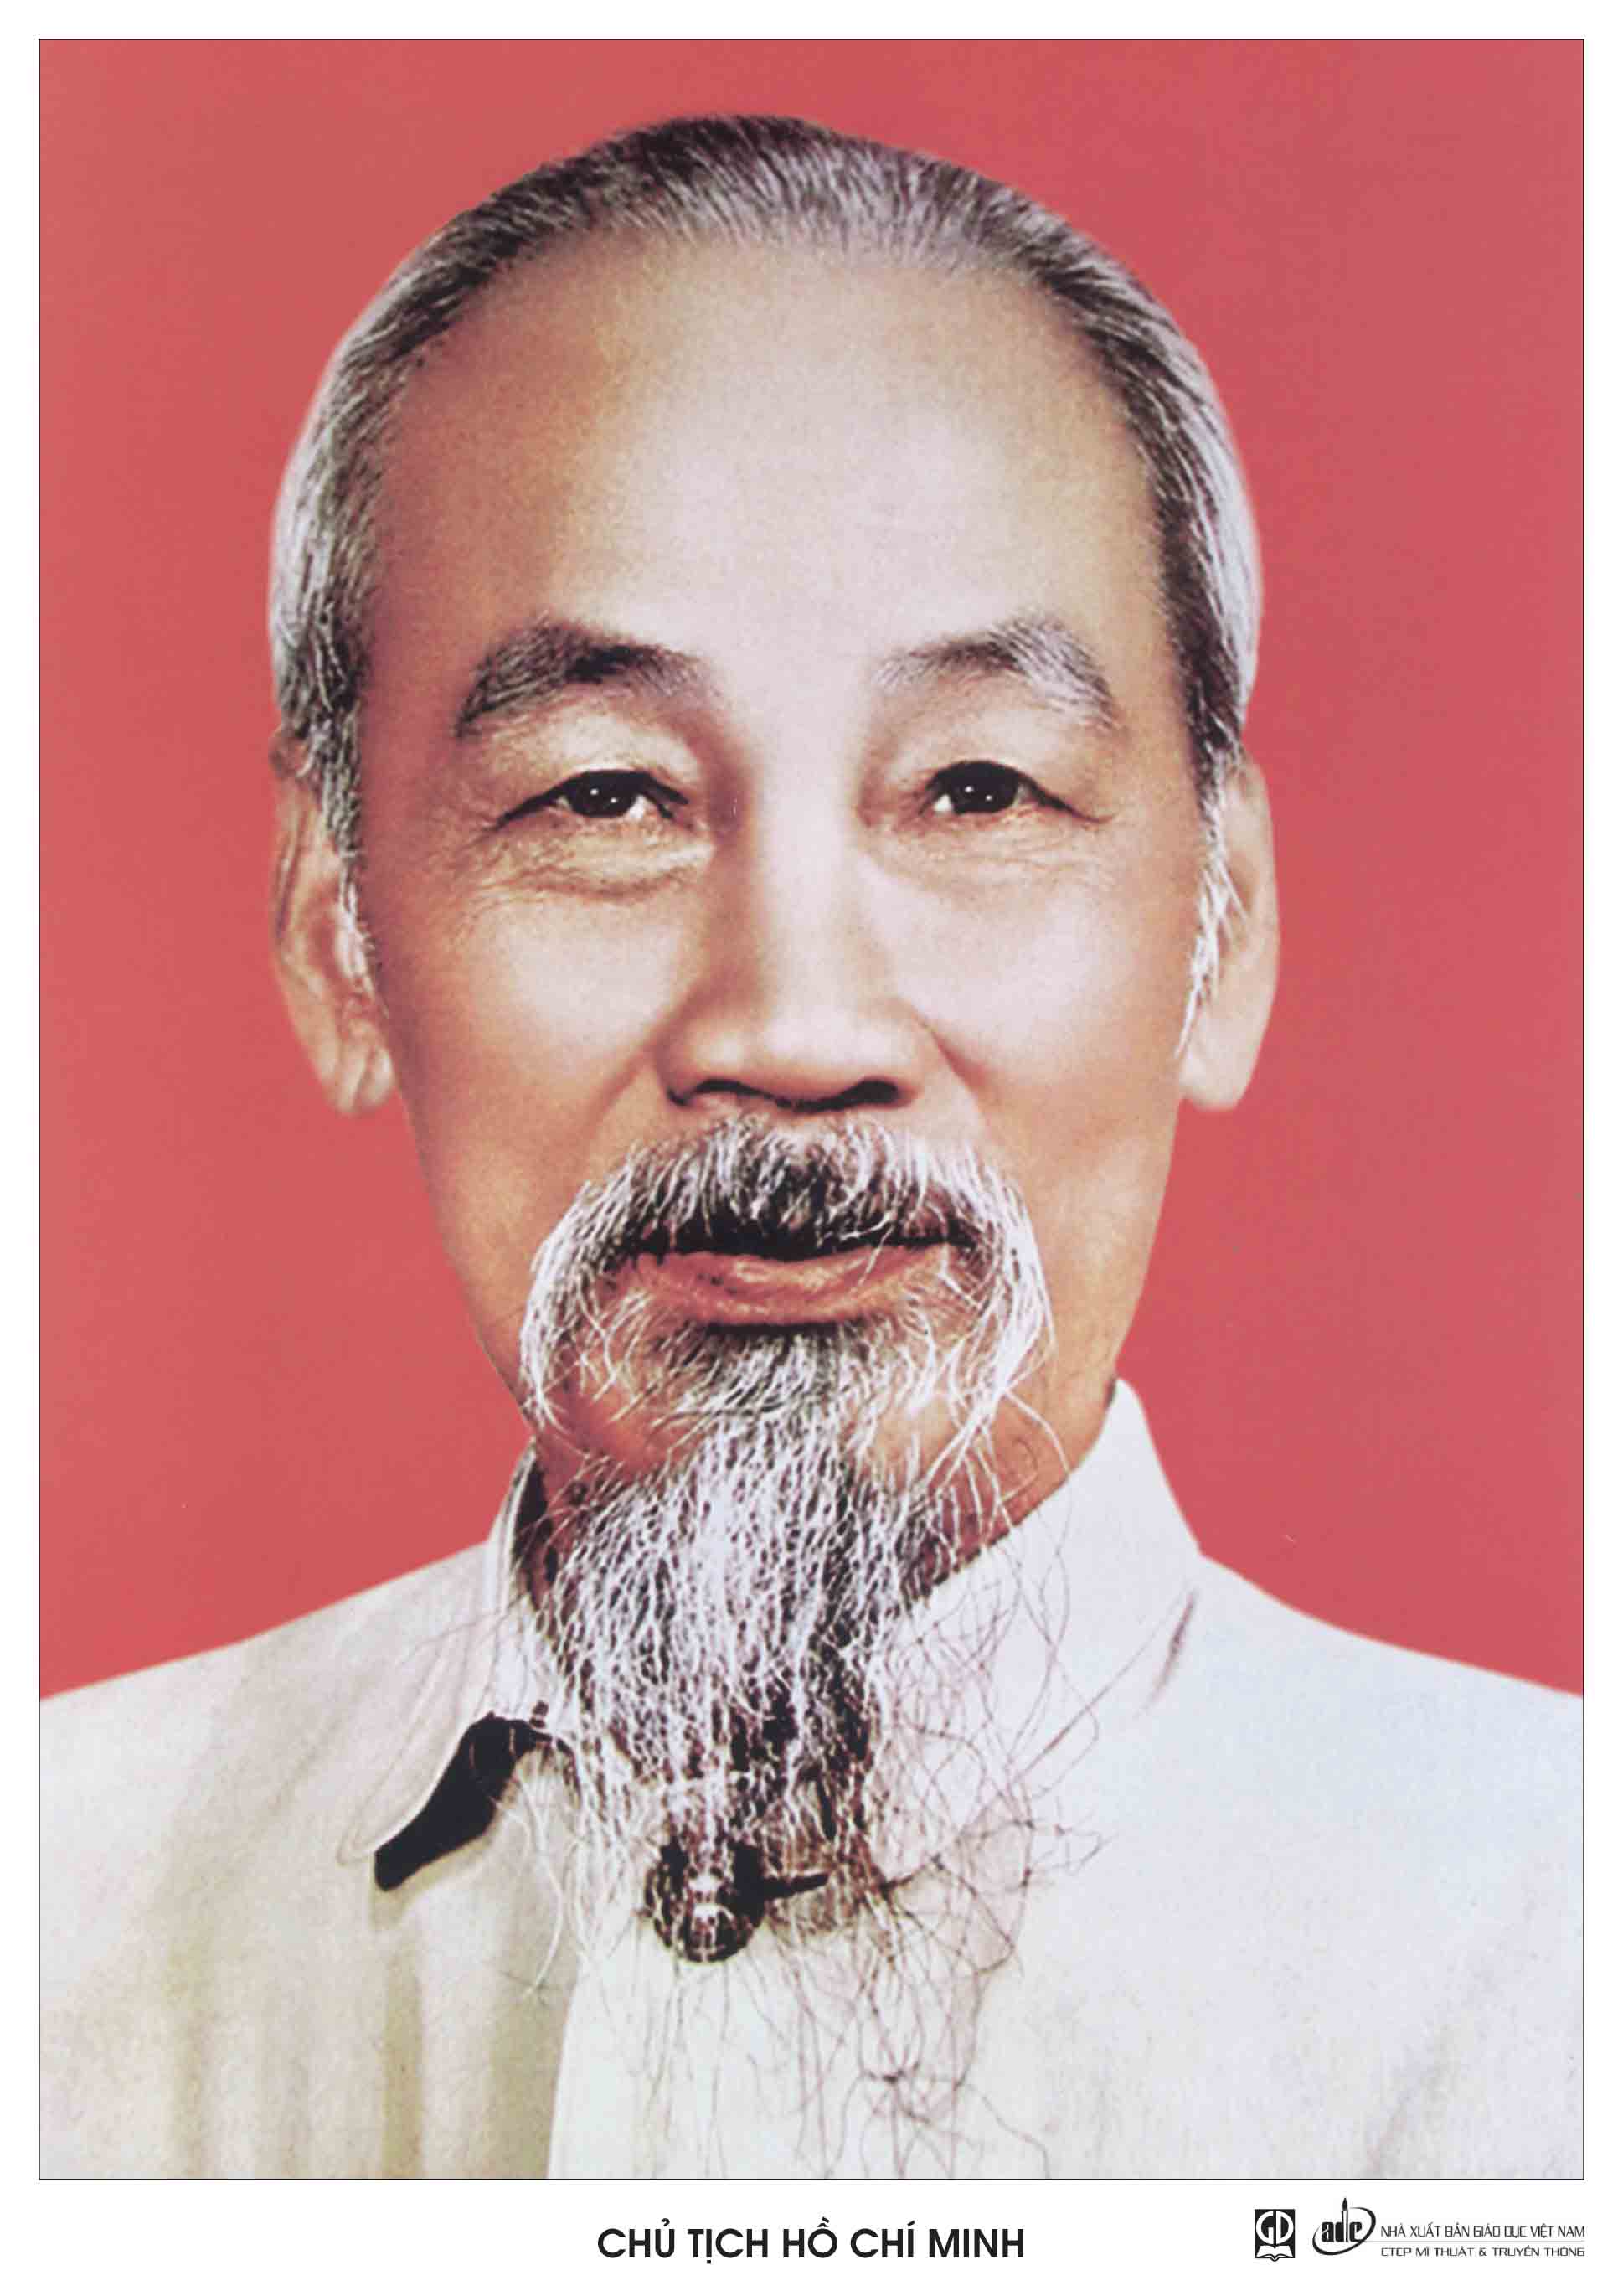 Kỷ niệm 133 năm ngày sinh Chủ tịch Hồ Chí Minh (19/5/1890 – 19/5/2023)